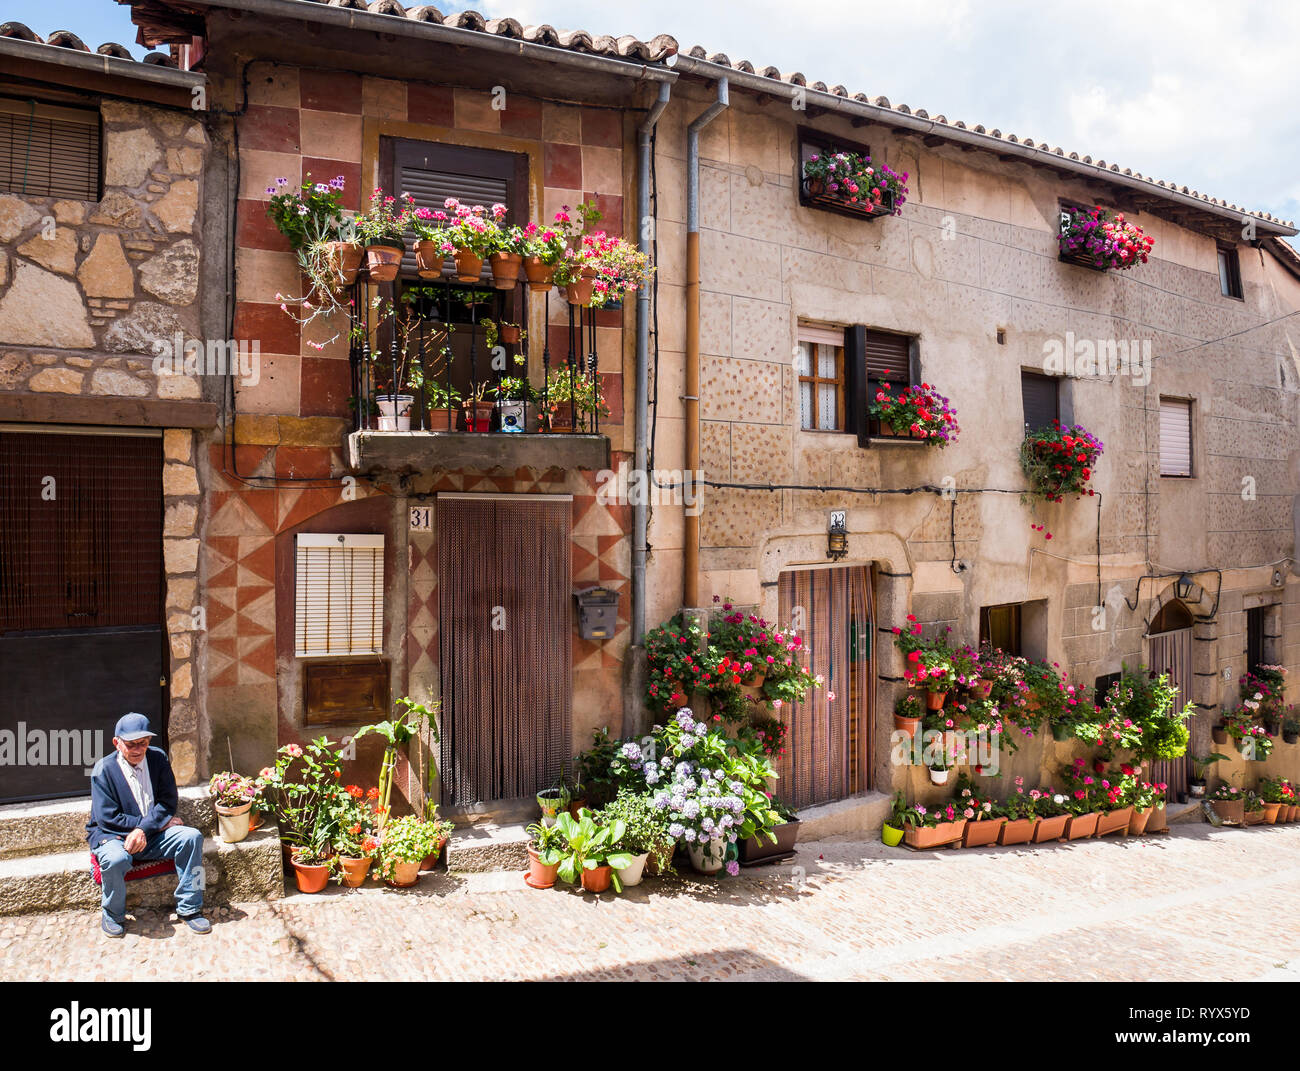 Arquitectura tradicional. Miranda del Castañar. Sierra de Francia. Salamanca. Castilla León. España. Stock Photo